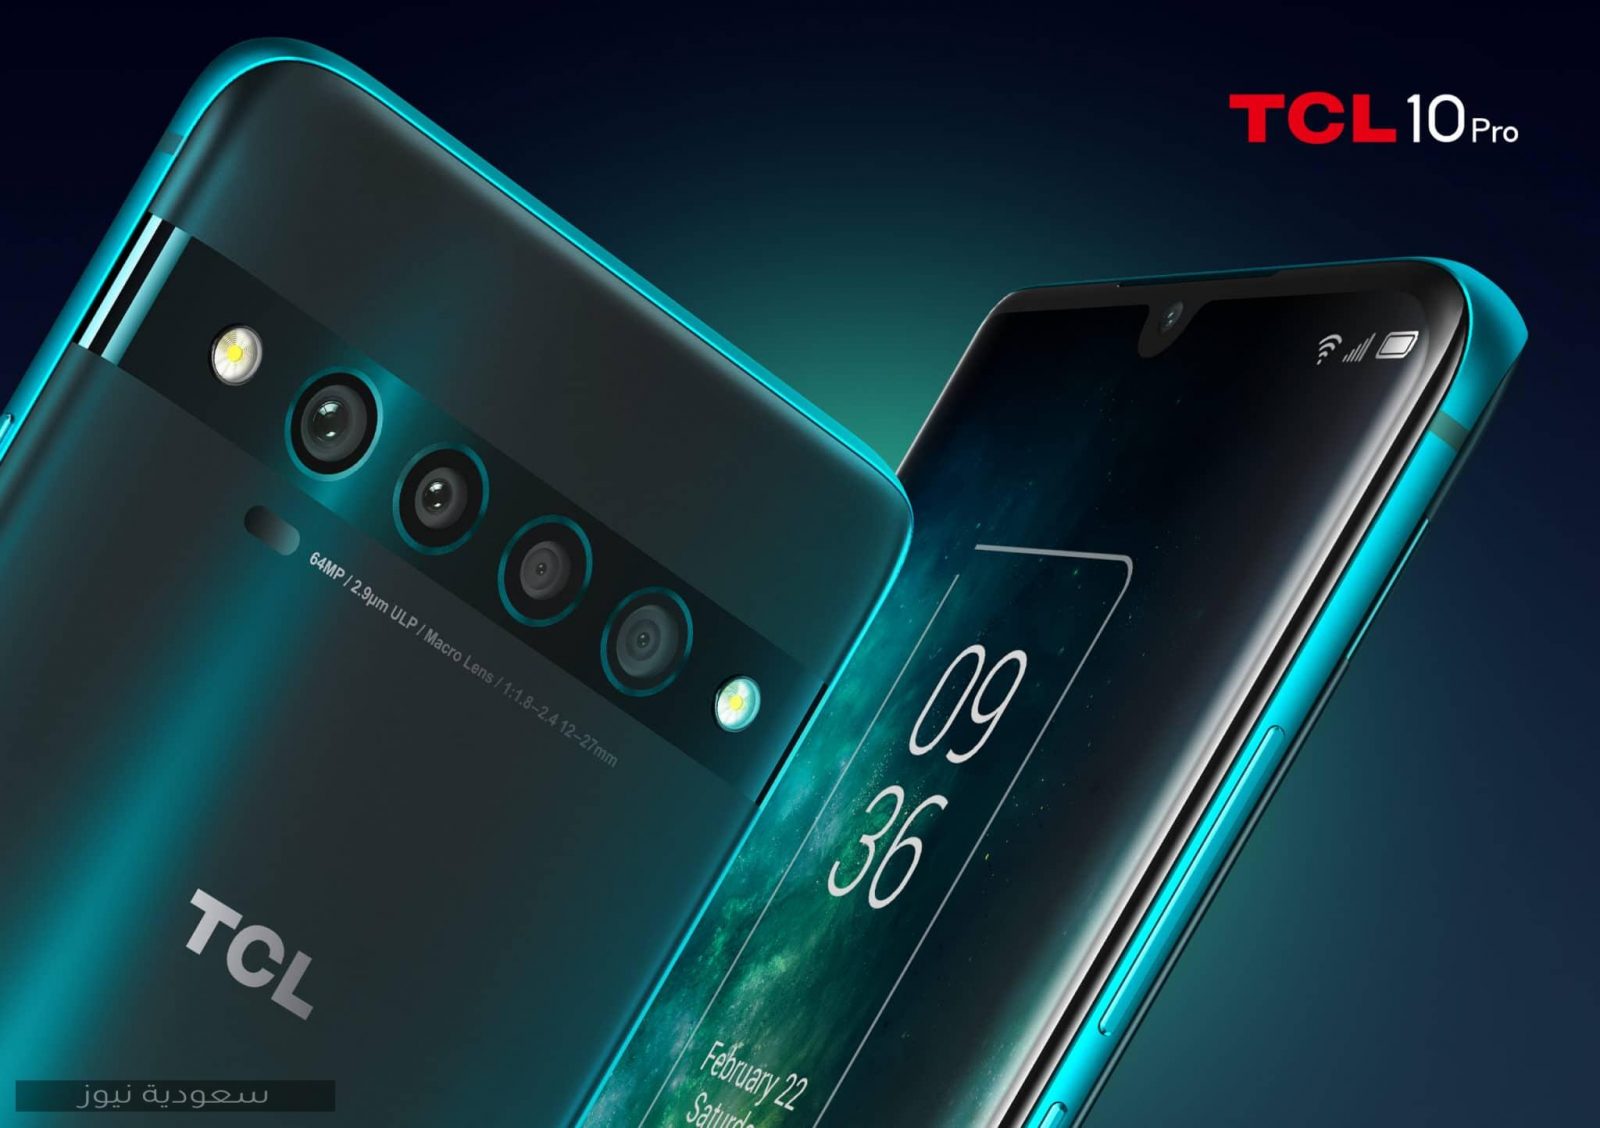 TCL تدخل عالم الهواتف الذكية بـ3 هواتف جديدة تحمل علامتها التجارية